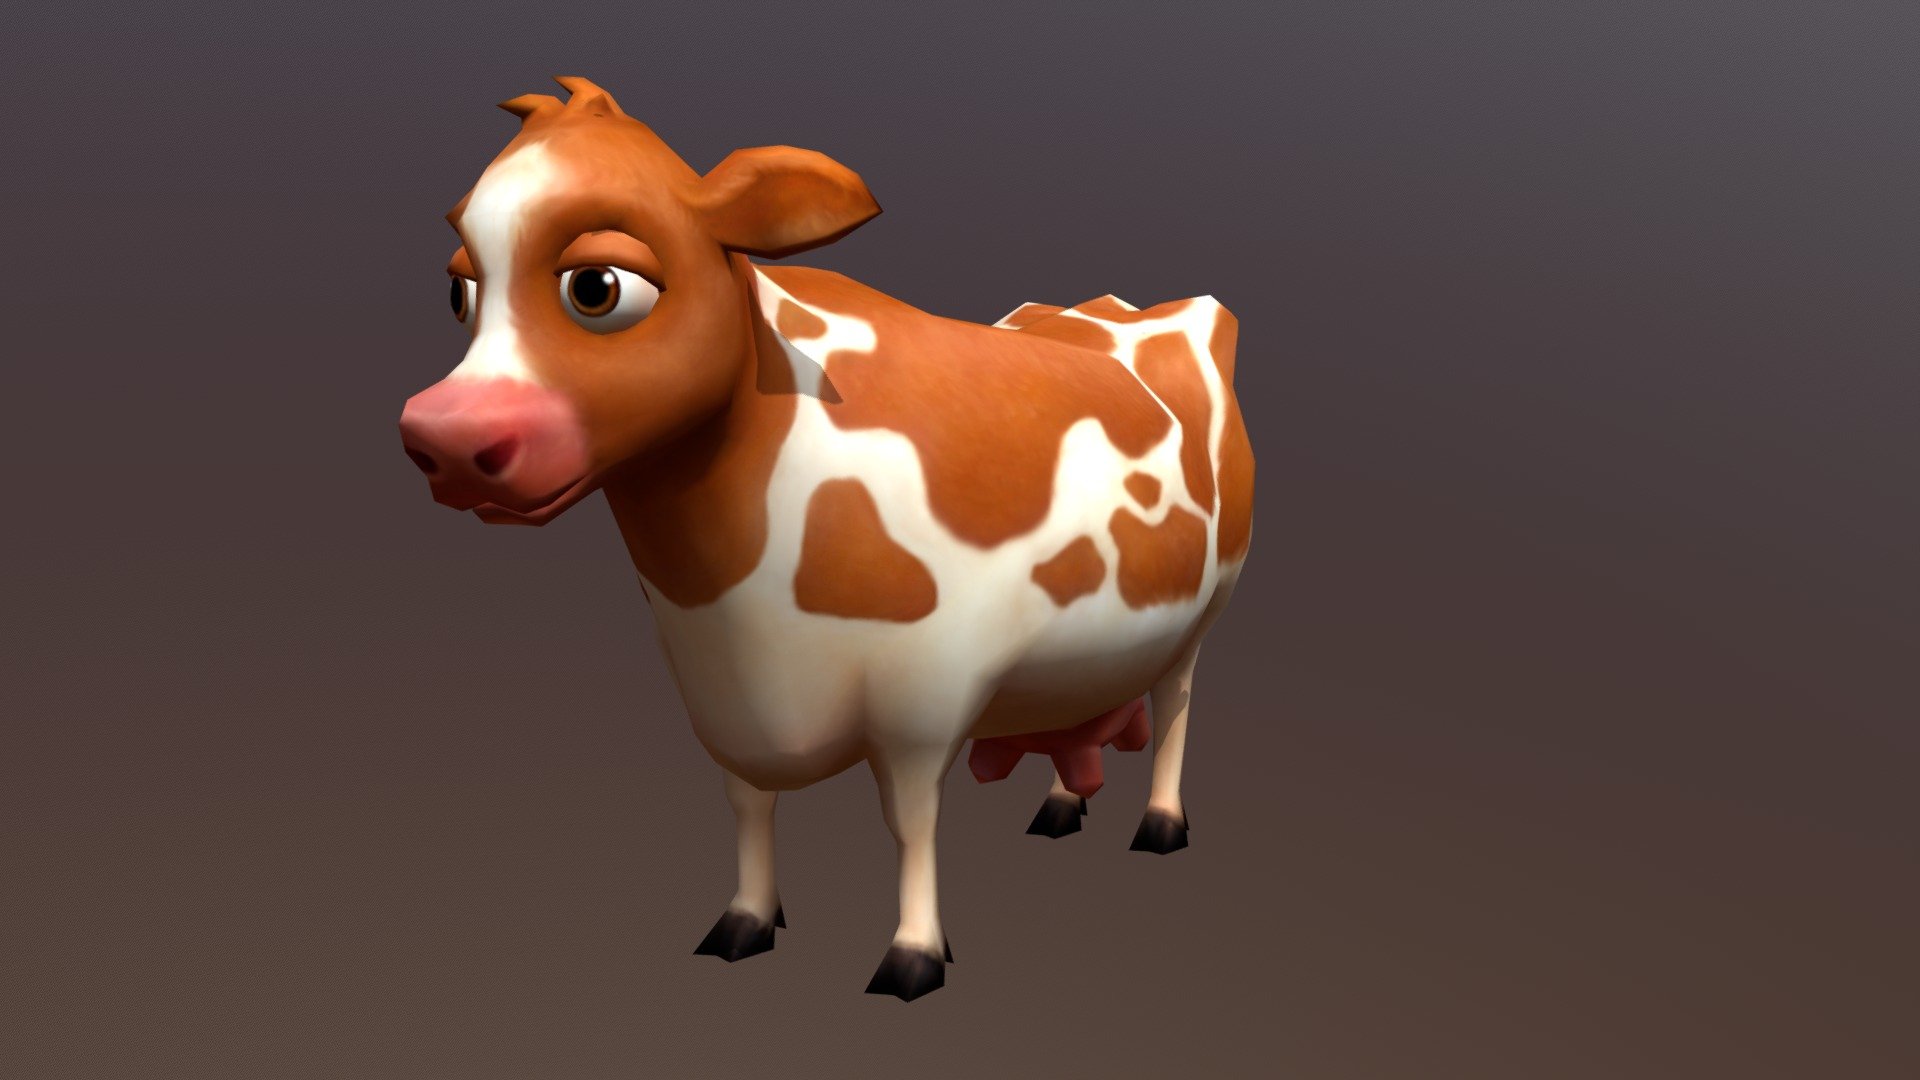 Cow - 3D model by yoyoyeah 3d model